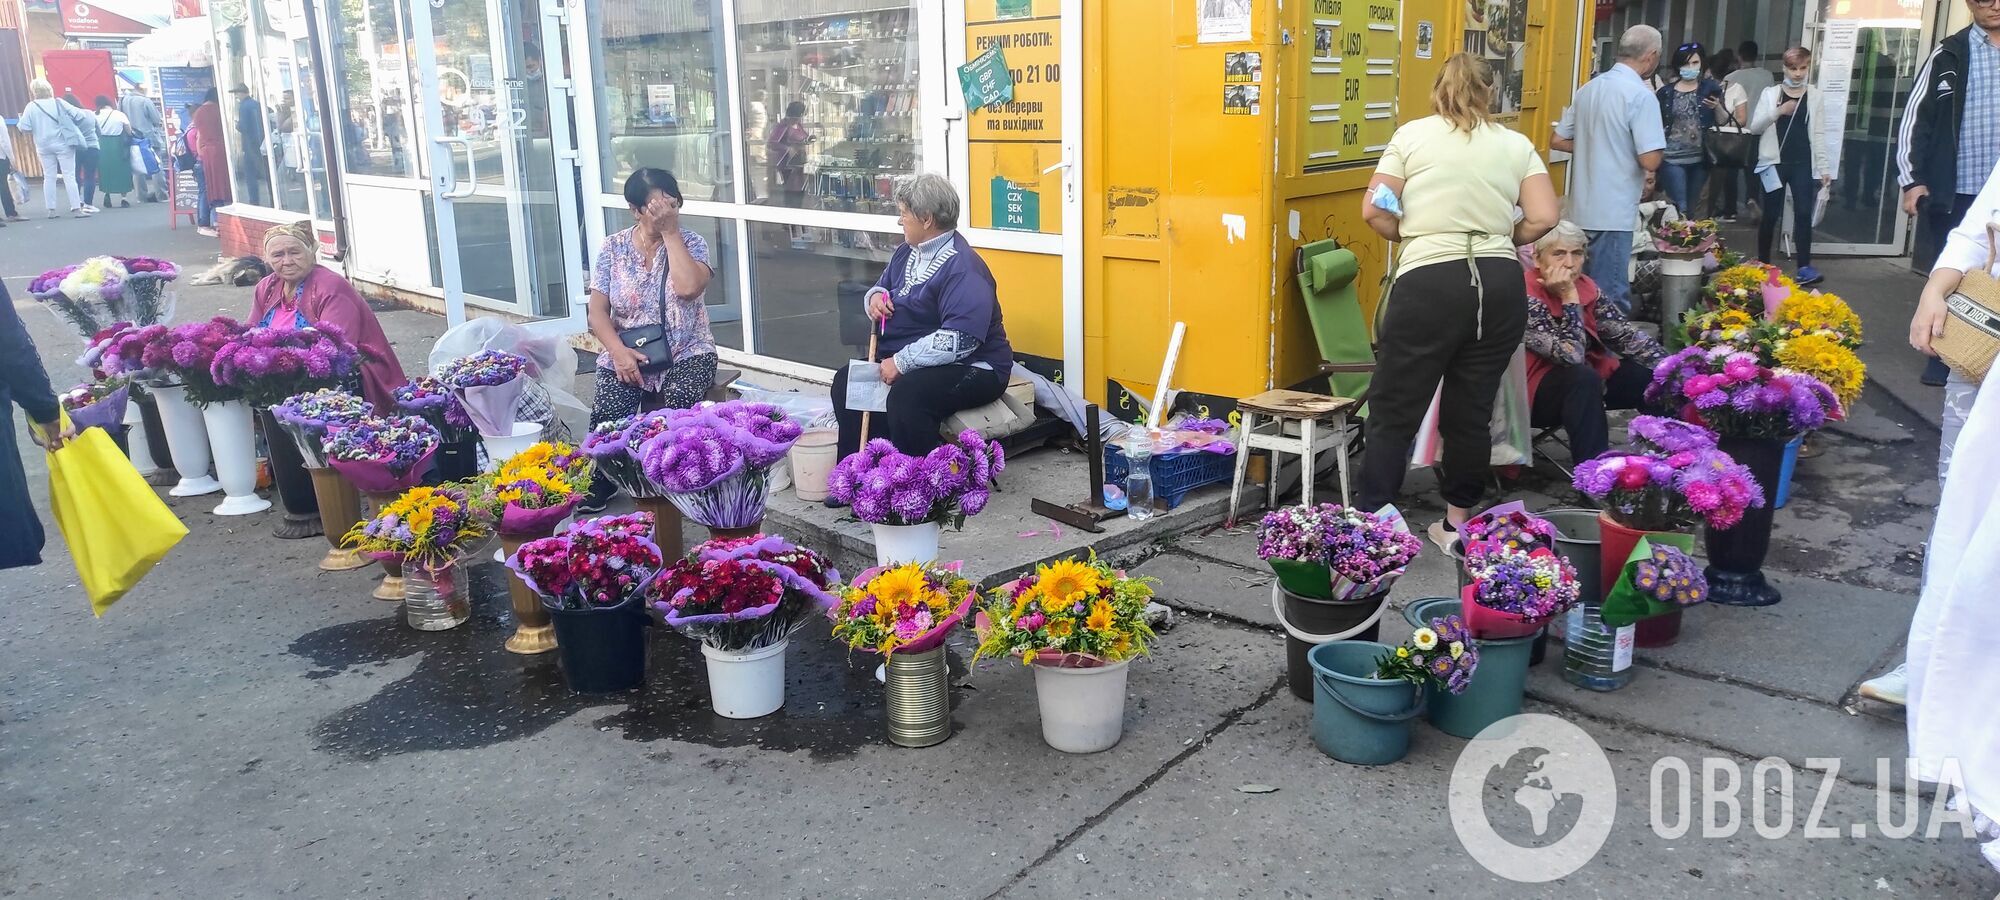 Дешевле всего покупать цветы у бабушек на остановках.